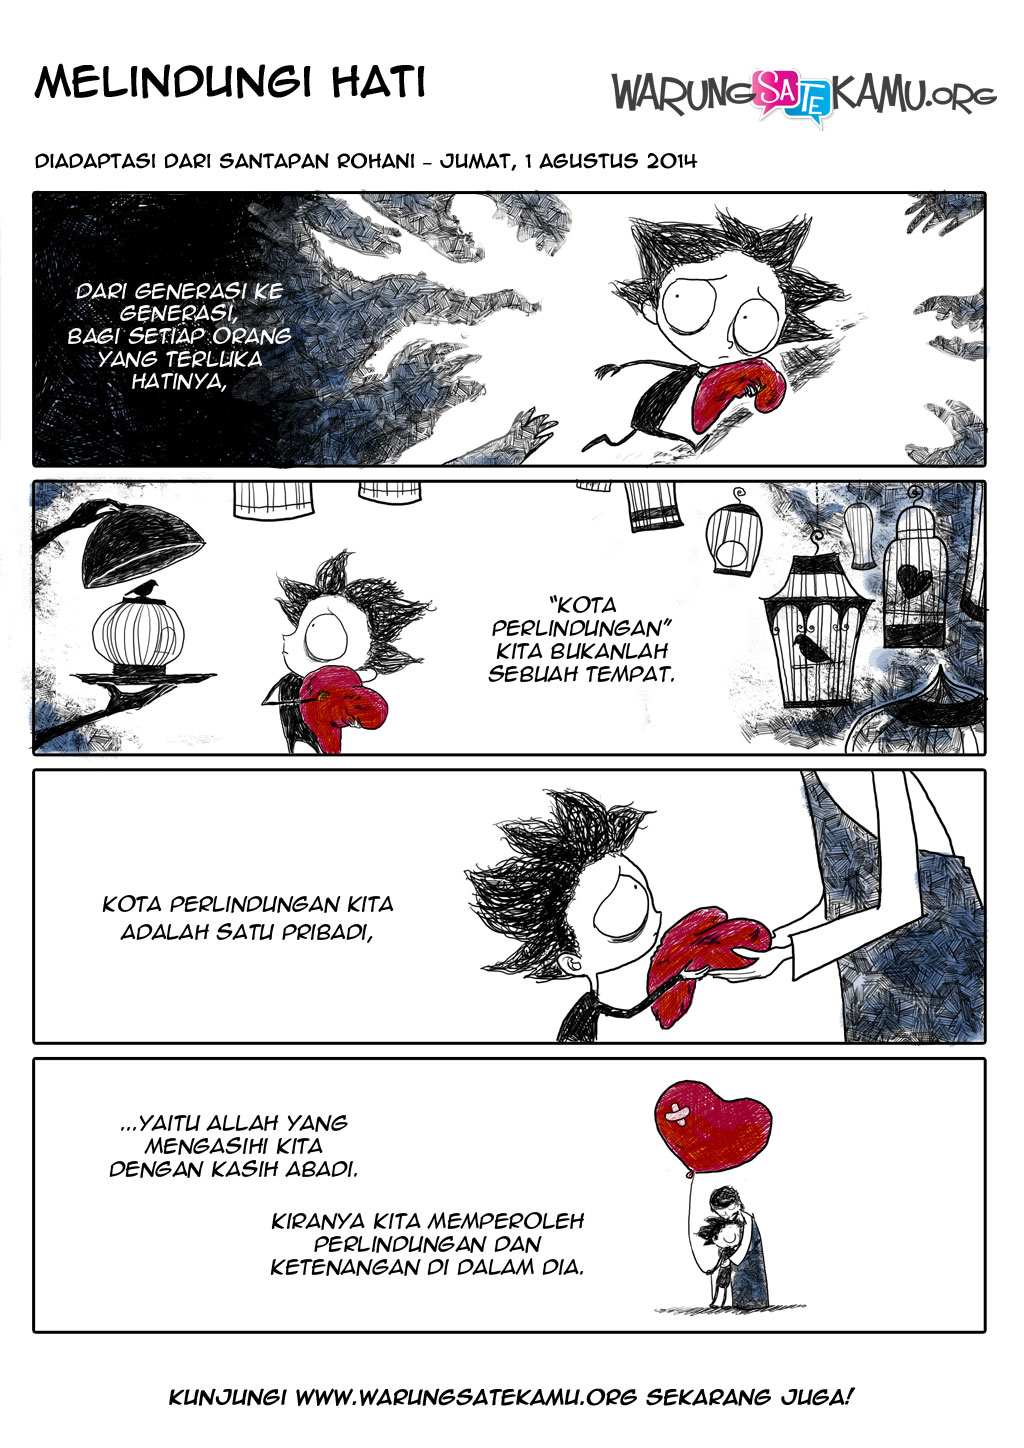 Komik-Strip-WarungSateKamu-20140801-Melindungi-Hati